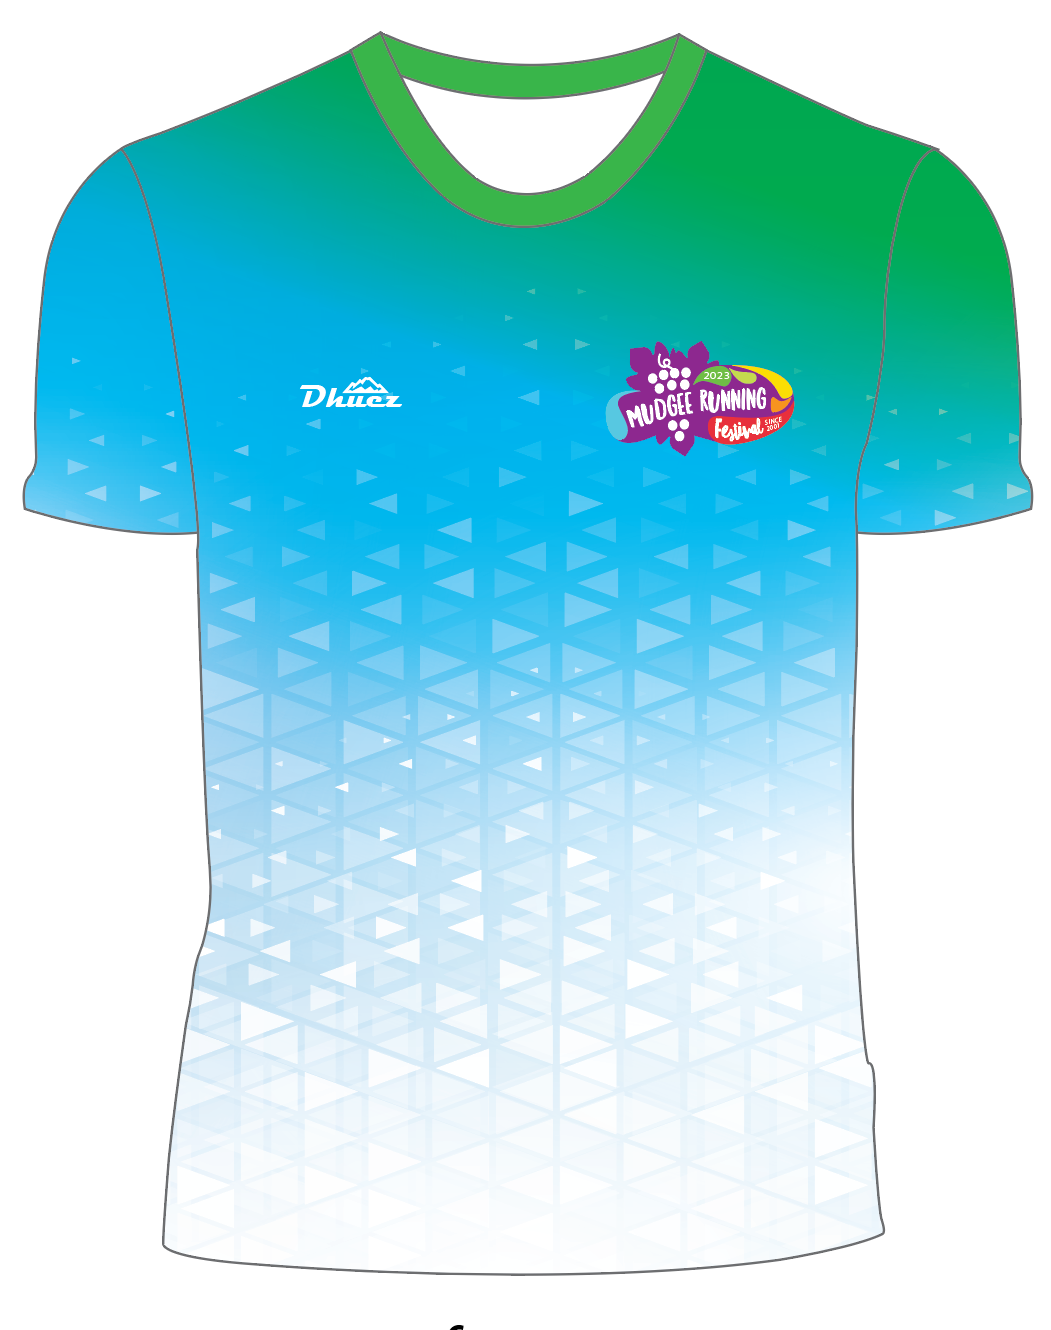 Mudgee Running Festival t-shirt